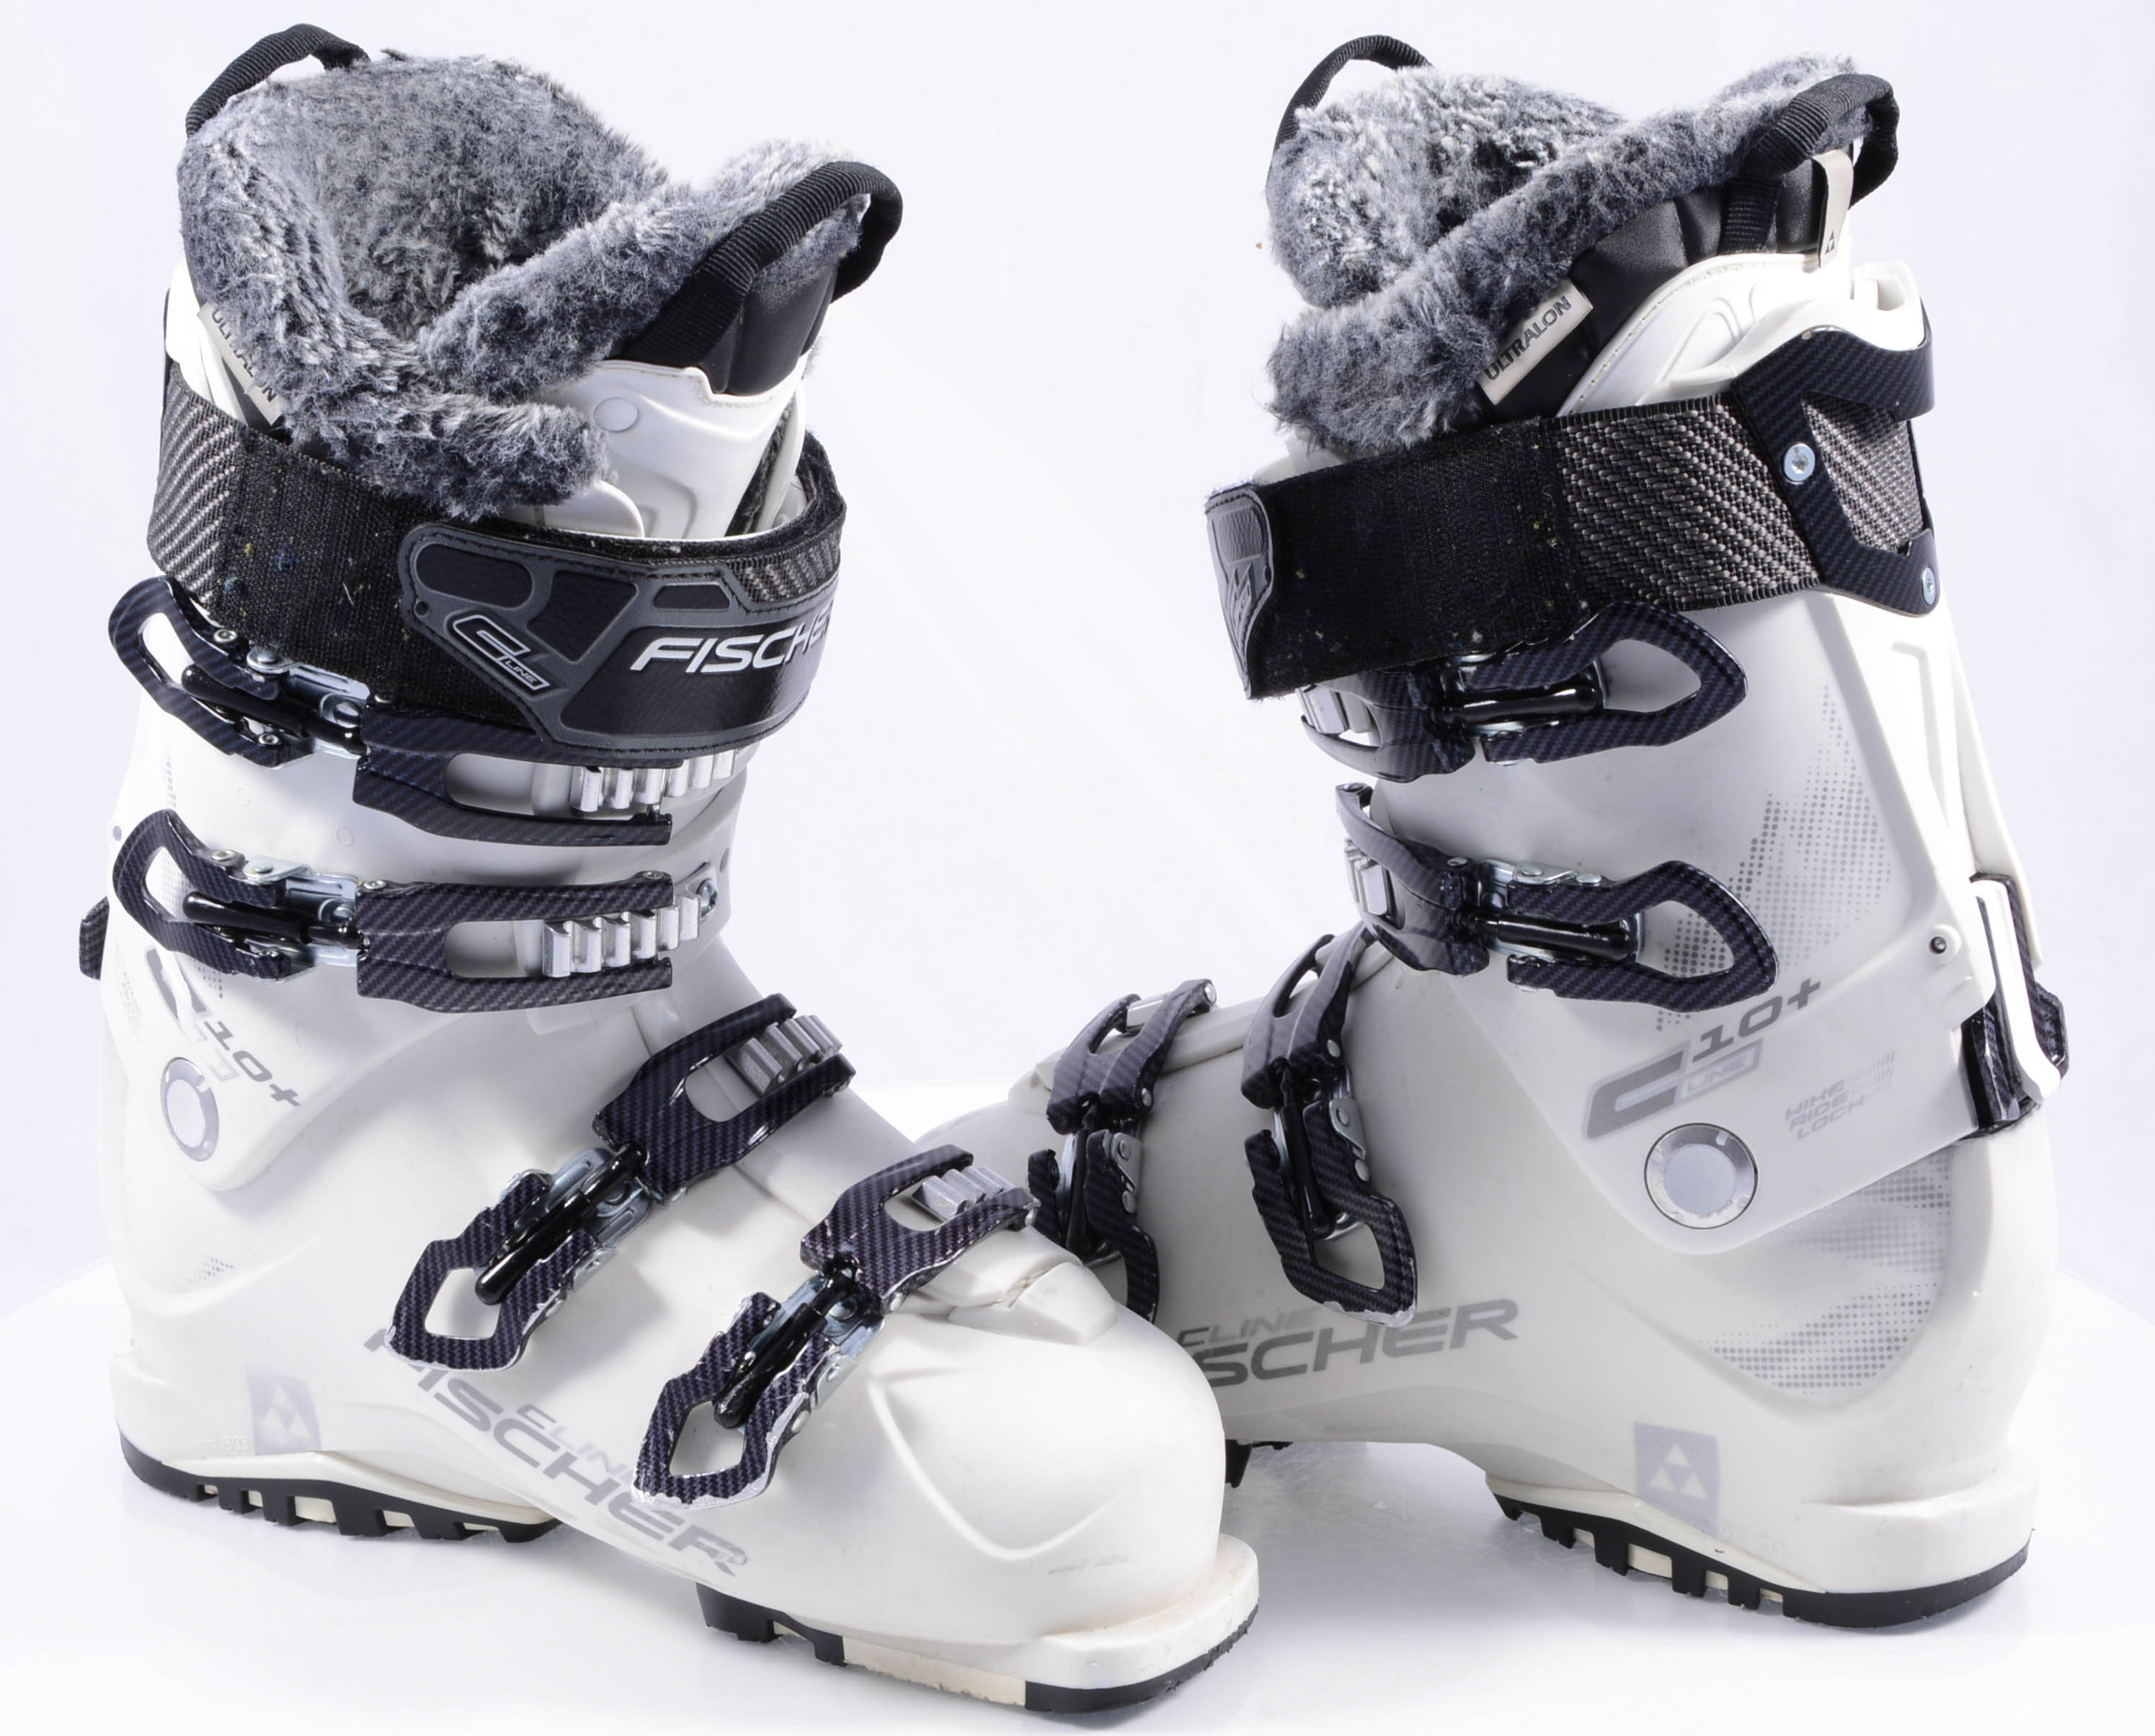 botas esquí mujer C-LINE 10 SKI/WALK, Vacuum Fit, white ( condición TOP ) - Mardosport.es